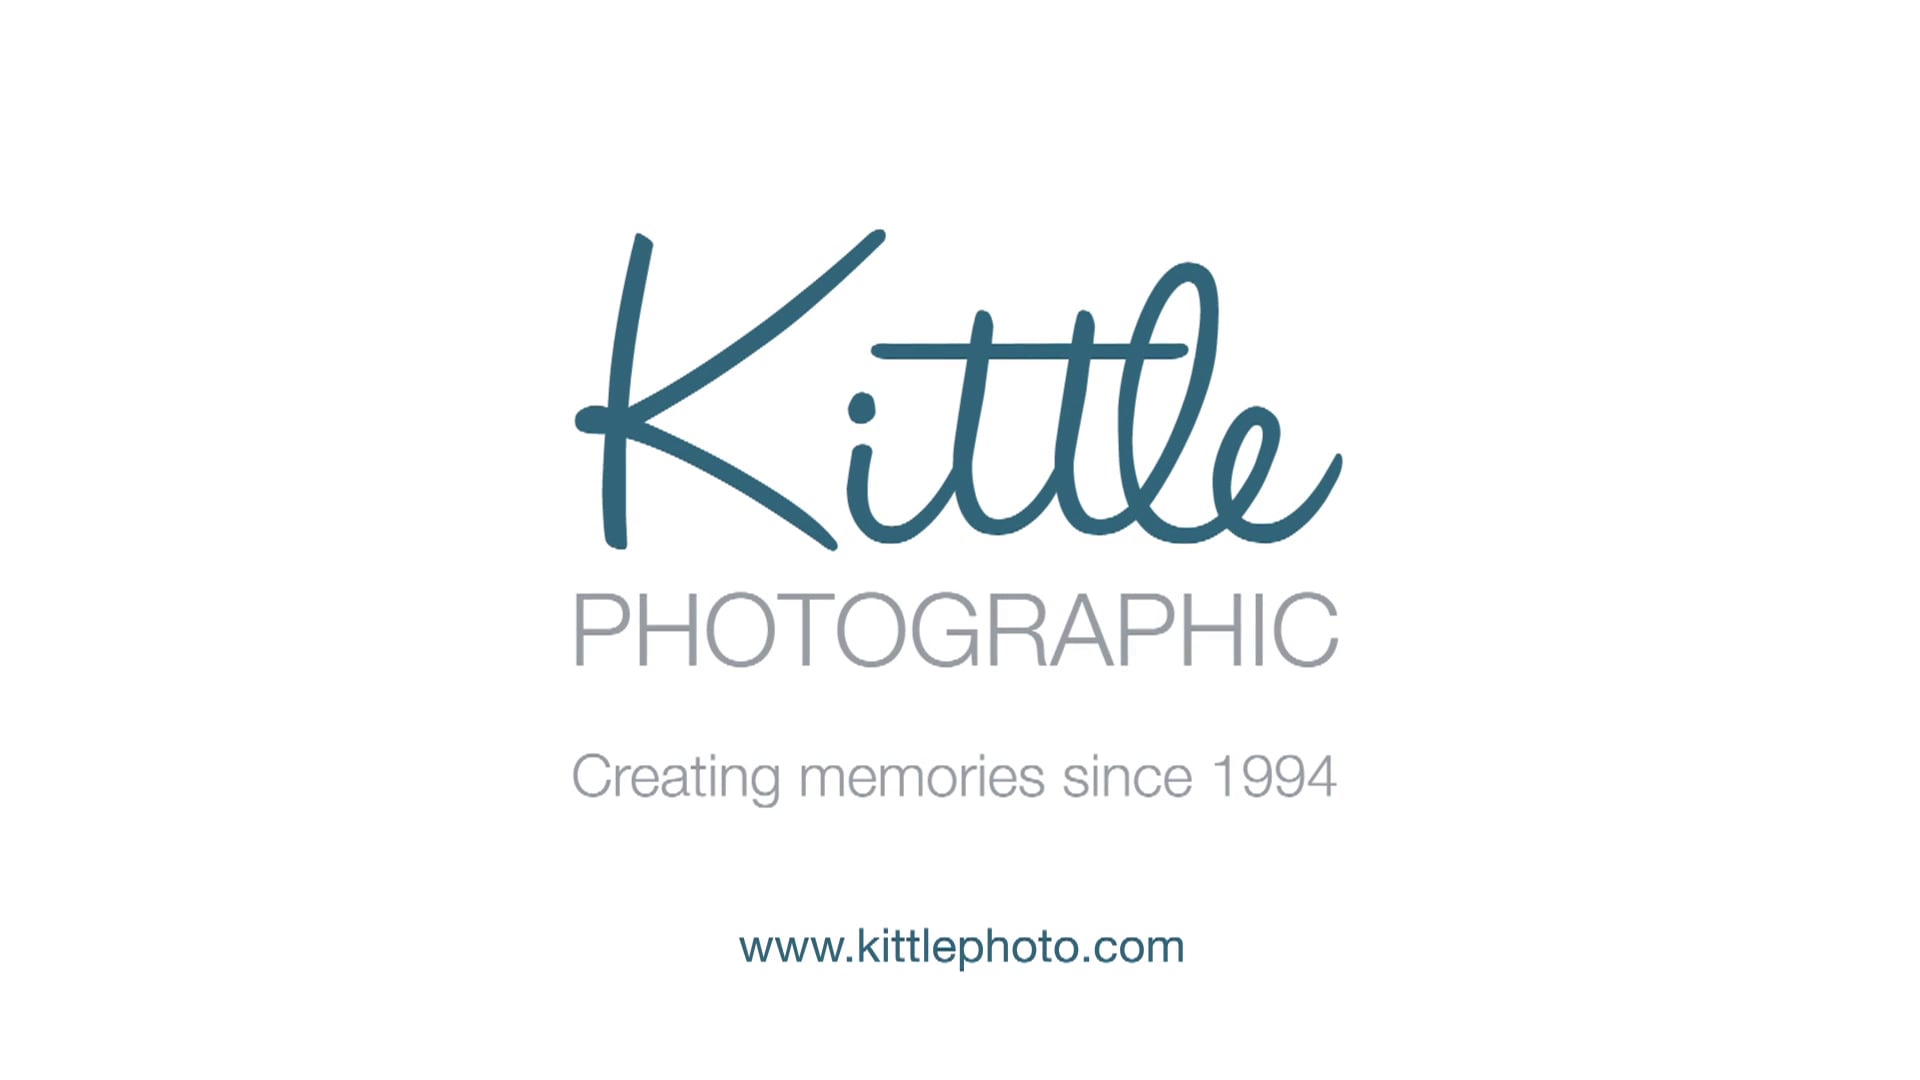 Kittle Promo - HD on Vimeo